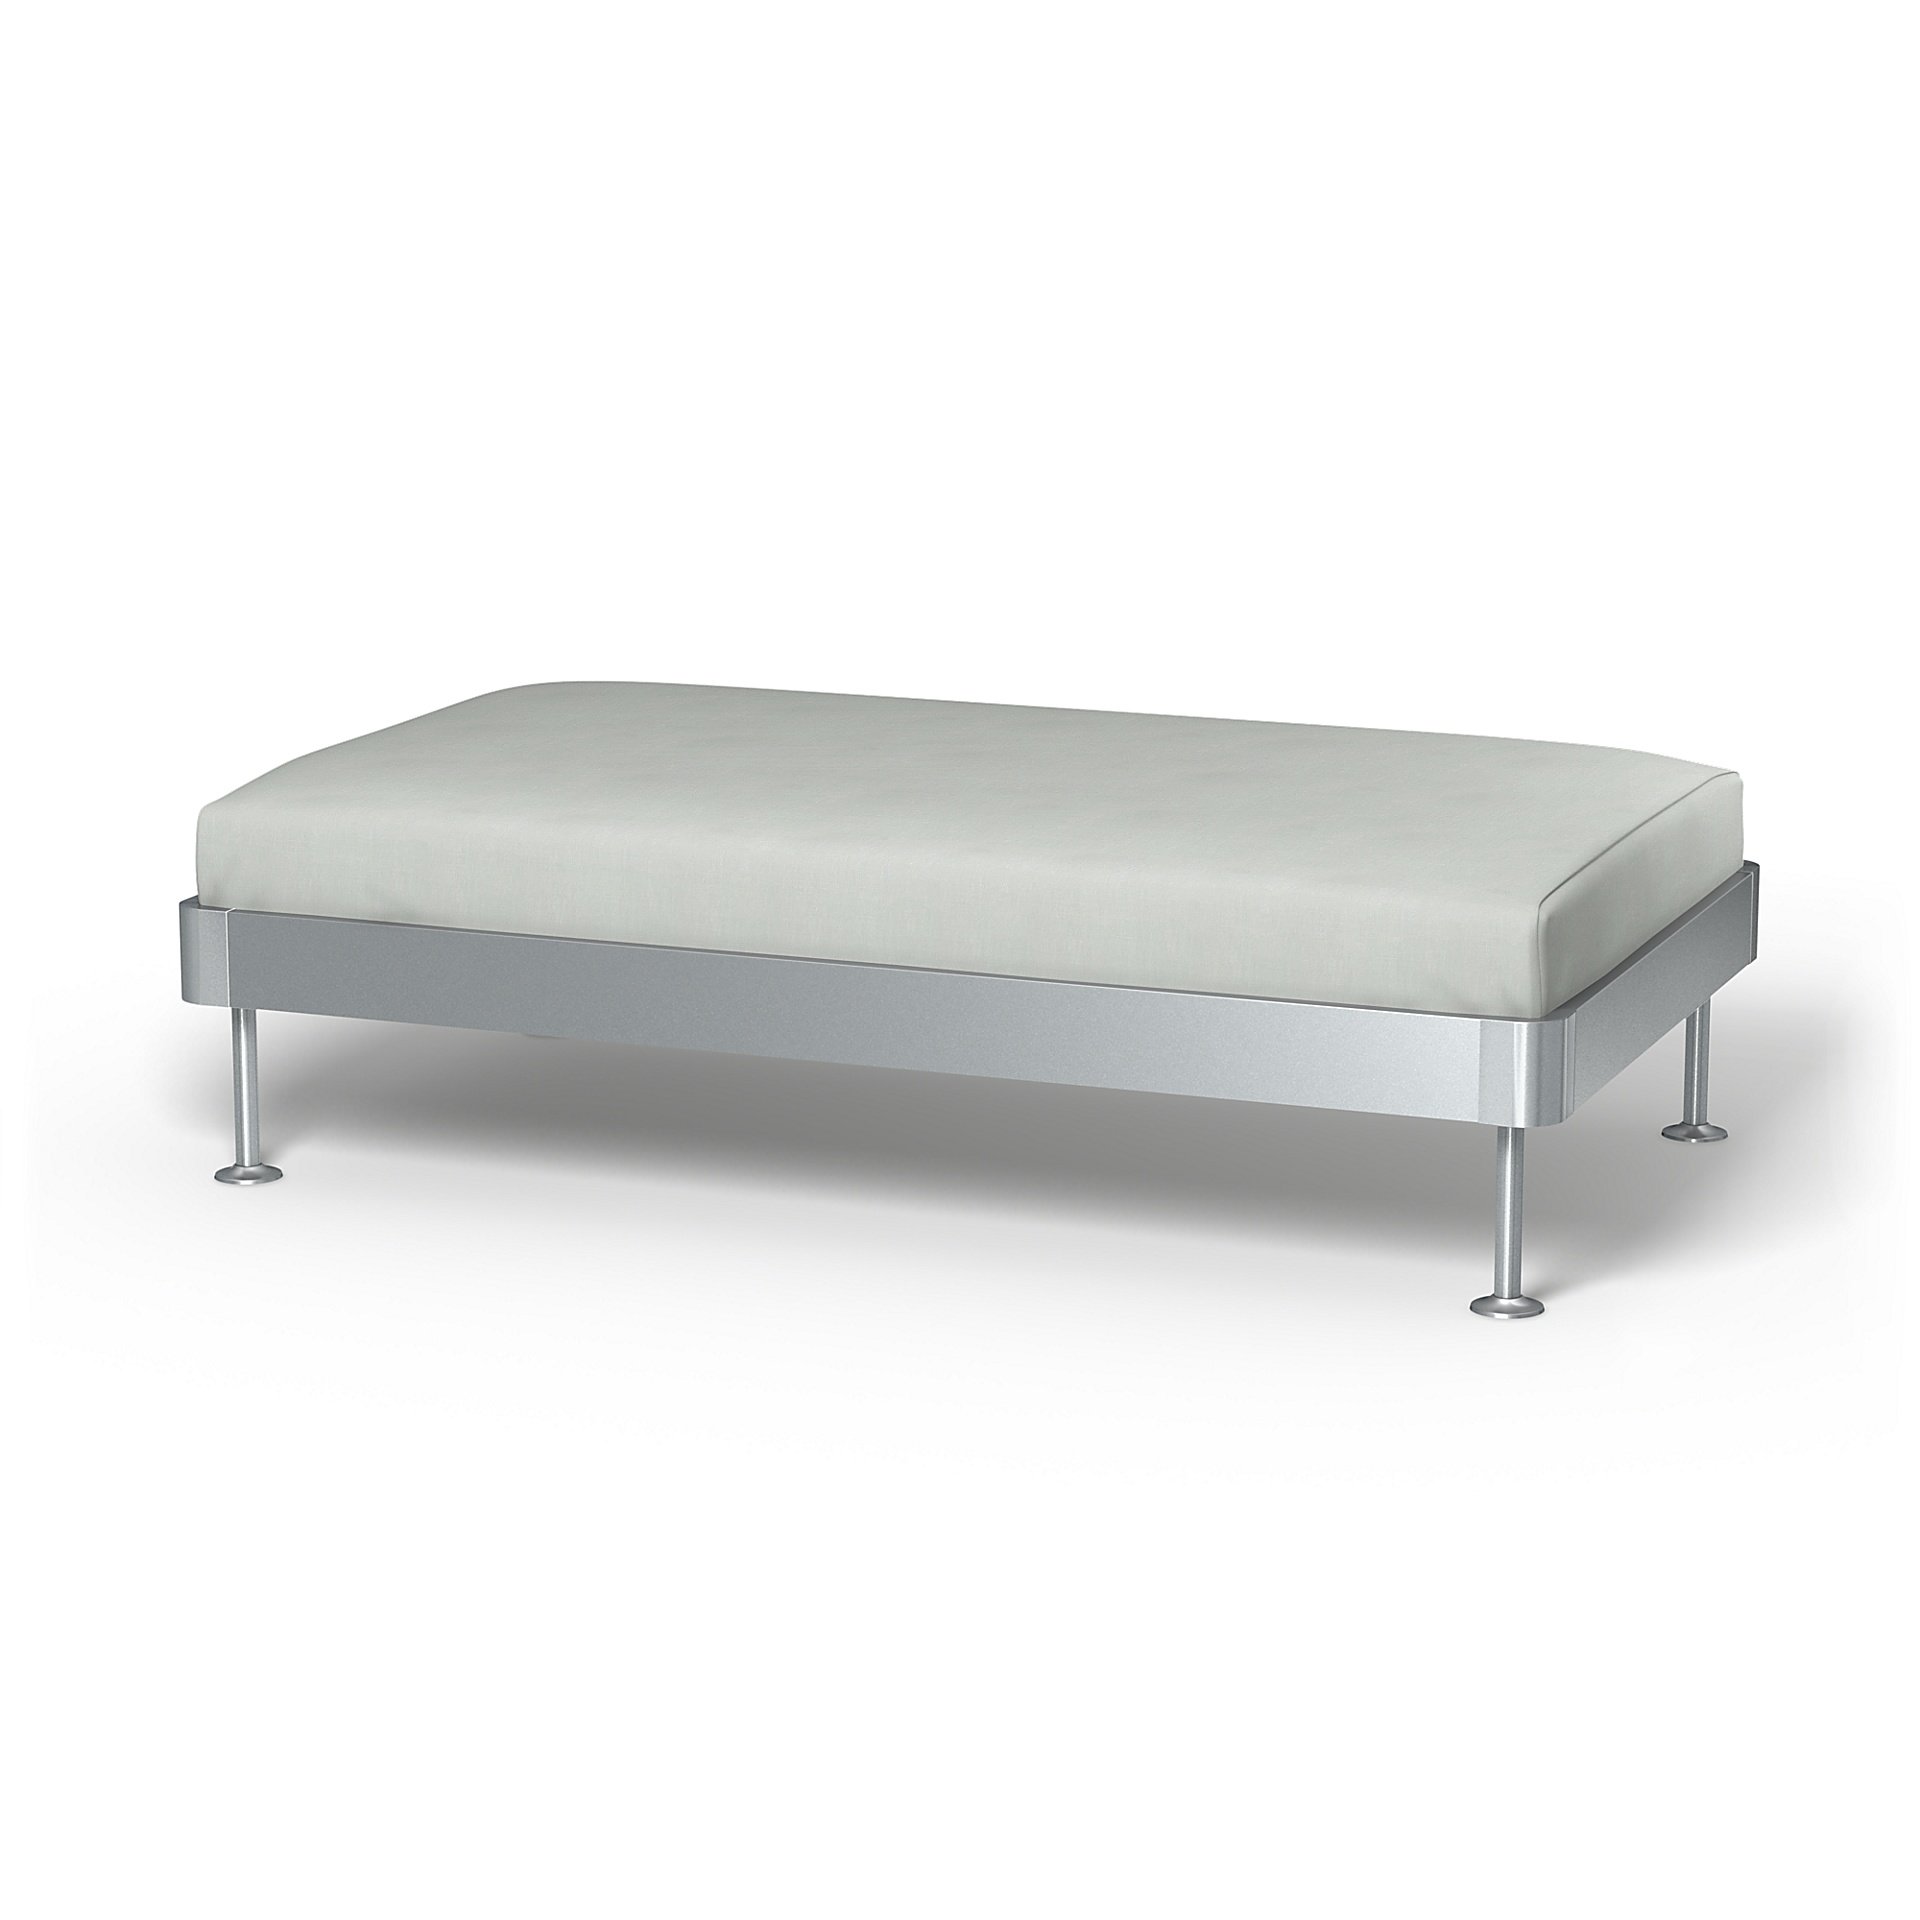 IKEA - Delaktig 2 Seat Platform Cover, Silver Grey, Linen - Bemz